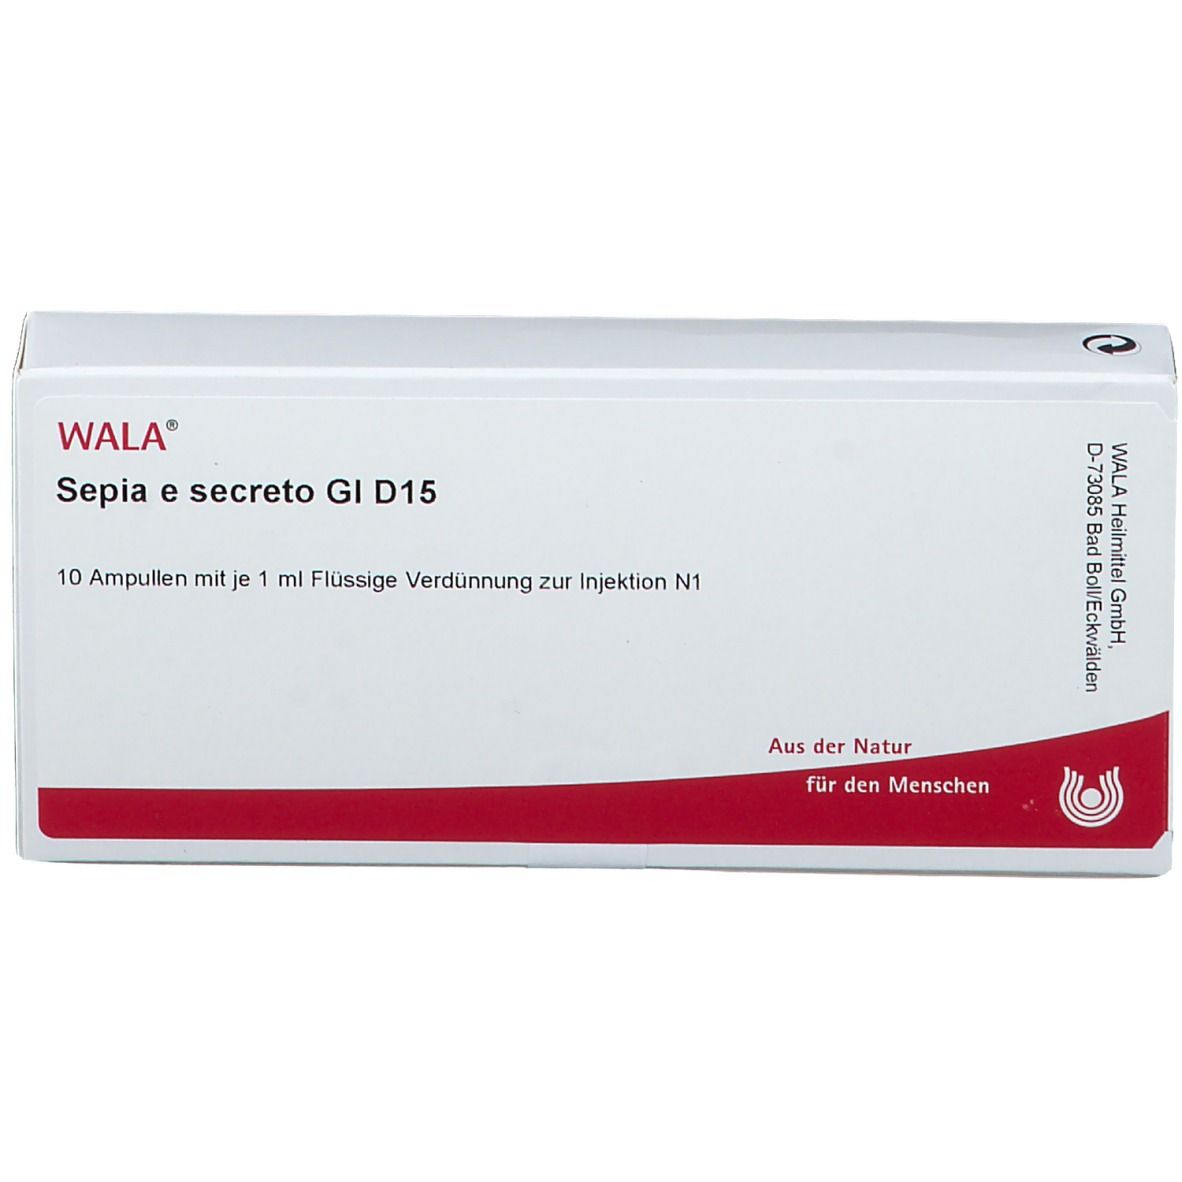 WALA® Sepia e secreto Gl D 15